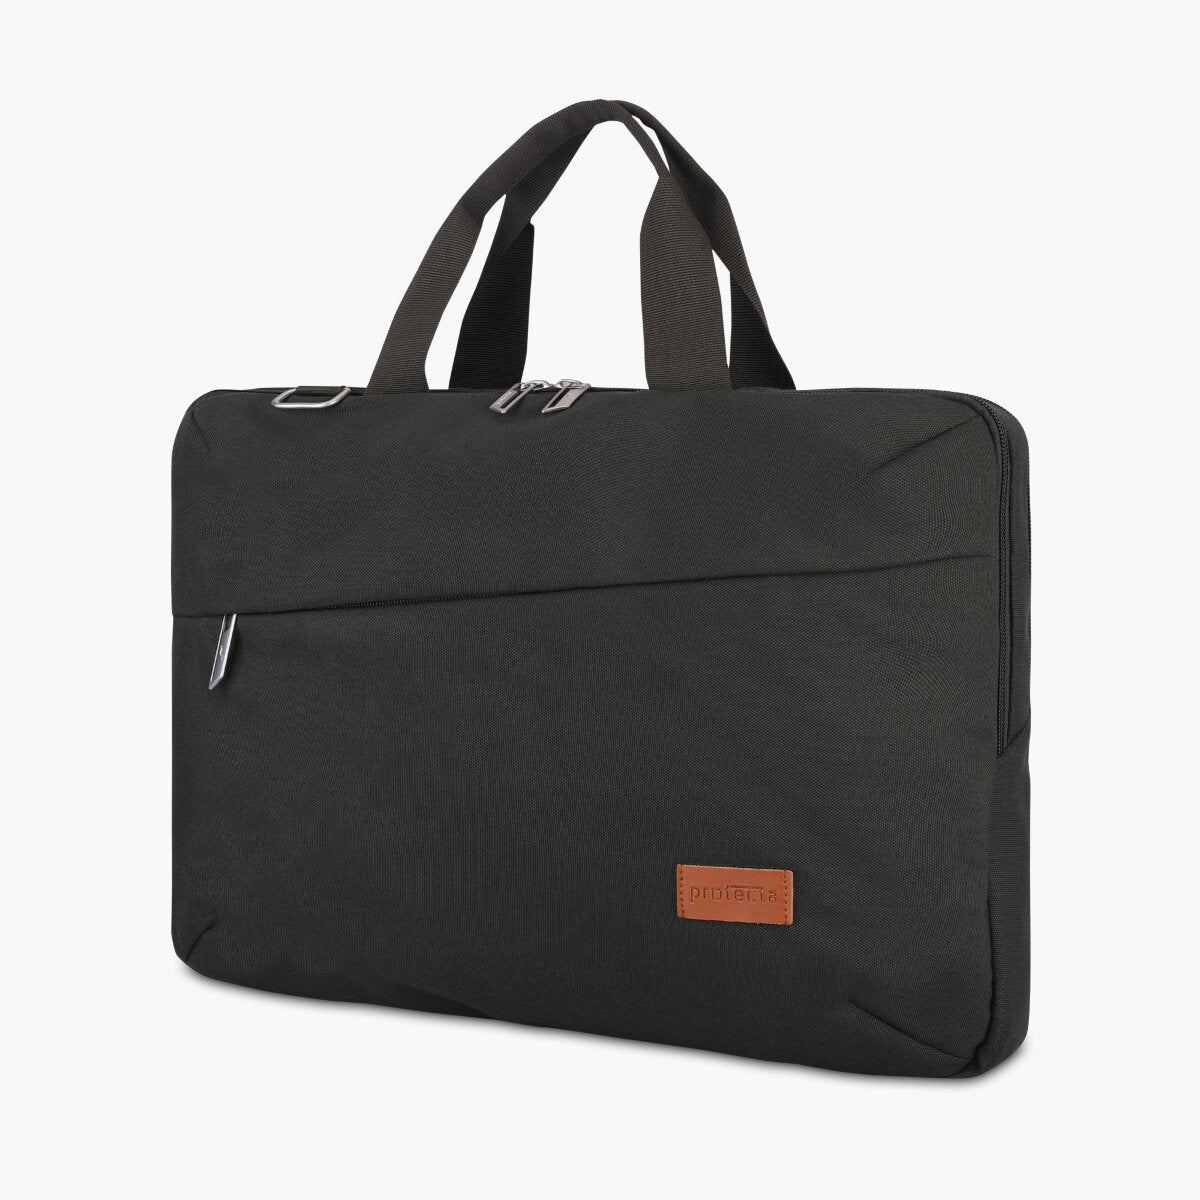 Olive | Protecta High Pedestal Office Laptop Bag - 2